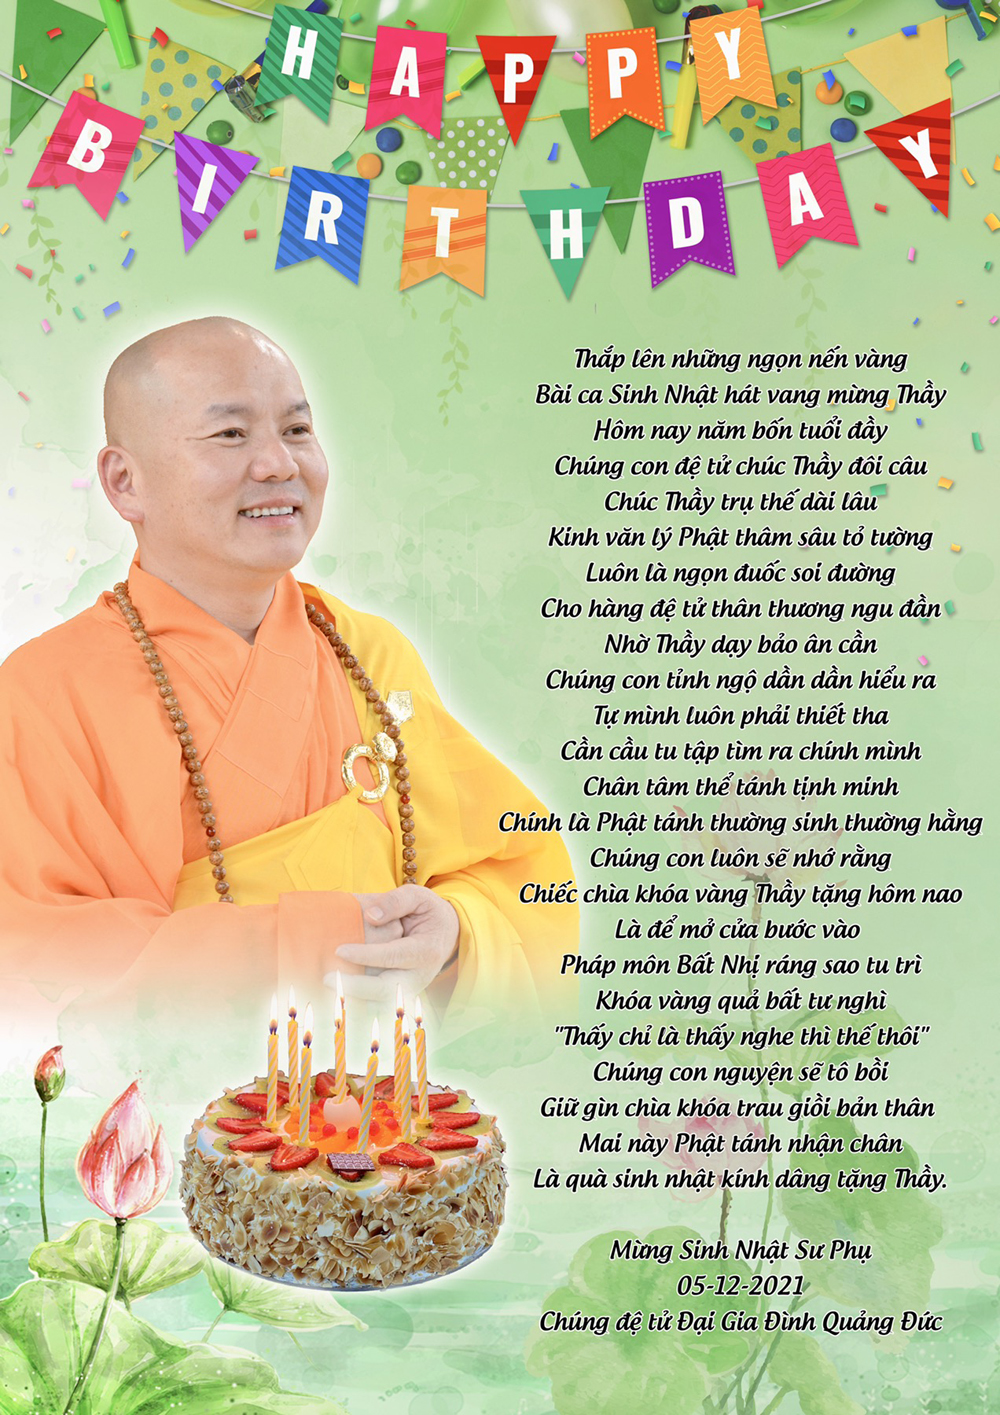 Happy Birthday Master - Kính Mừng Sinh Nhật Sư Phụ Nguyên Tạng (5/12/2021)  🙏🙏🙏🌹🥀🌷🍀🌷🌸🏵️🌻🌼🍁